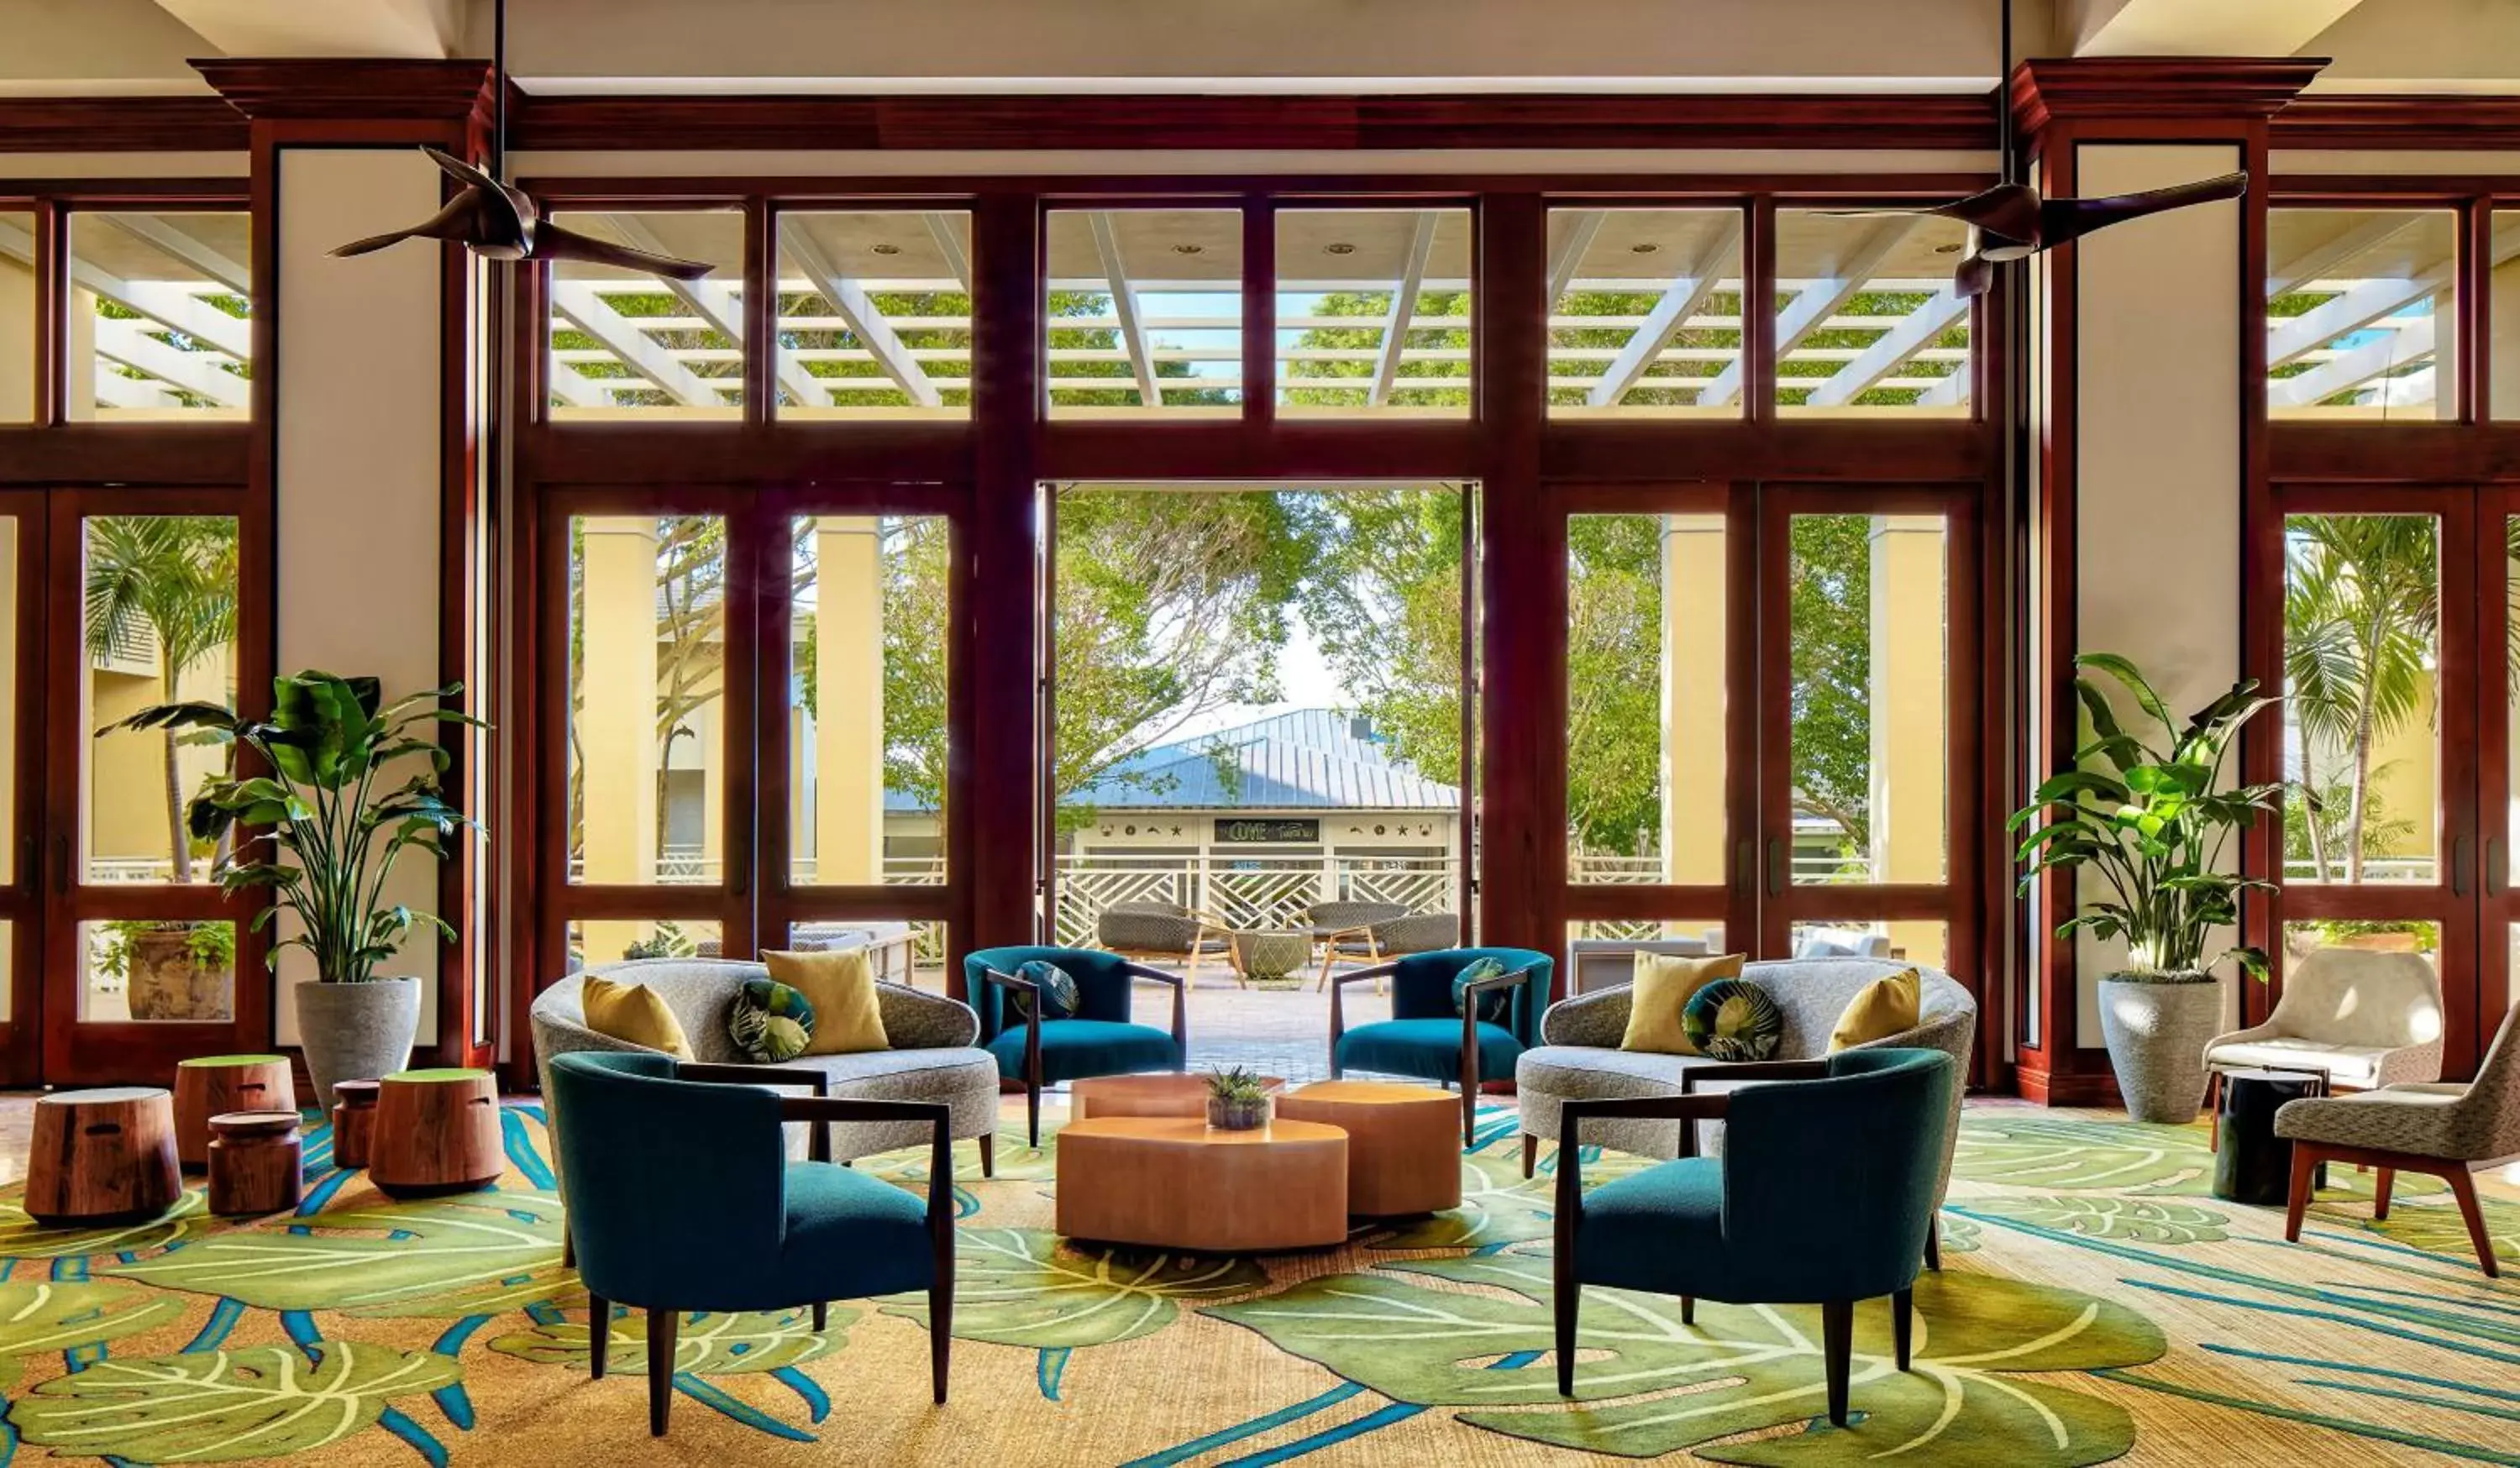 Lobby or reception in Hyatt Regency Coconut Point Resort & Spa Near Naples